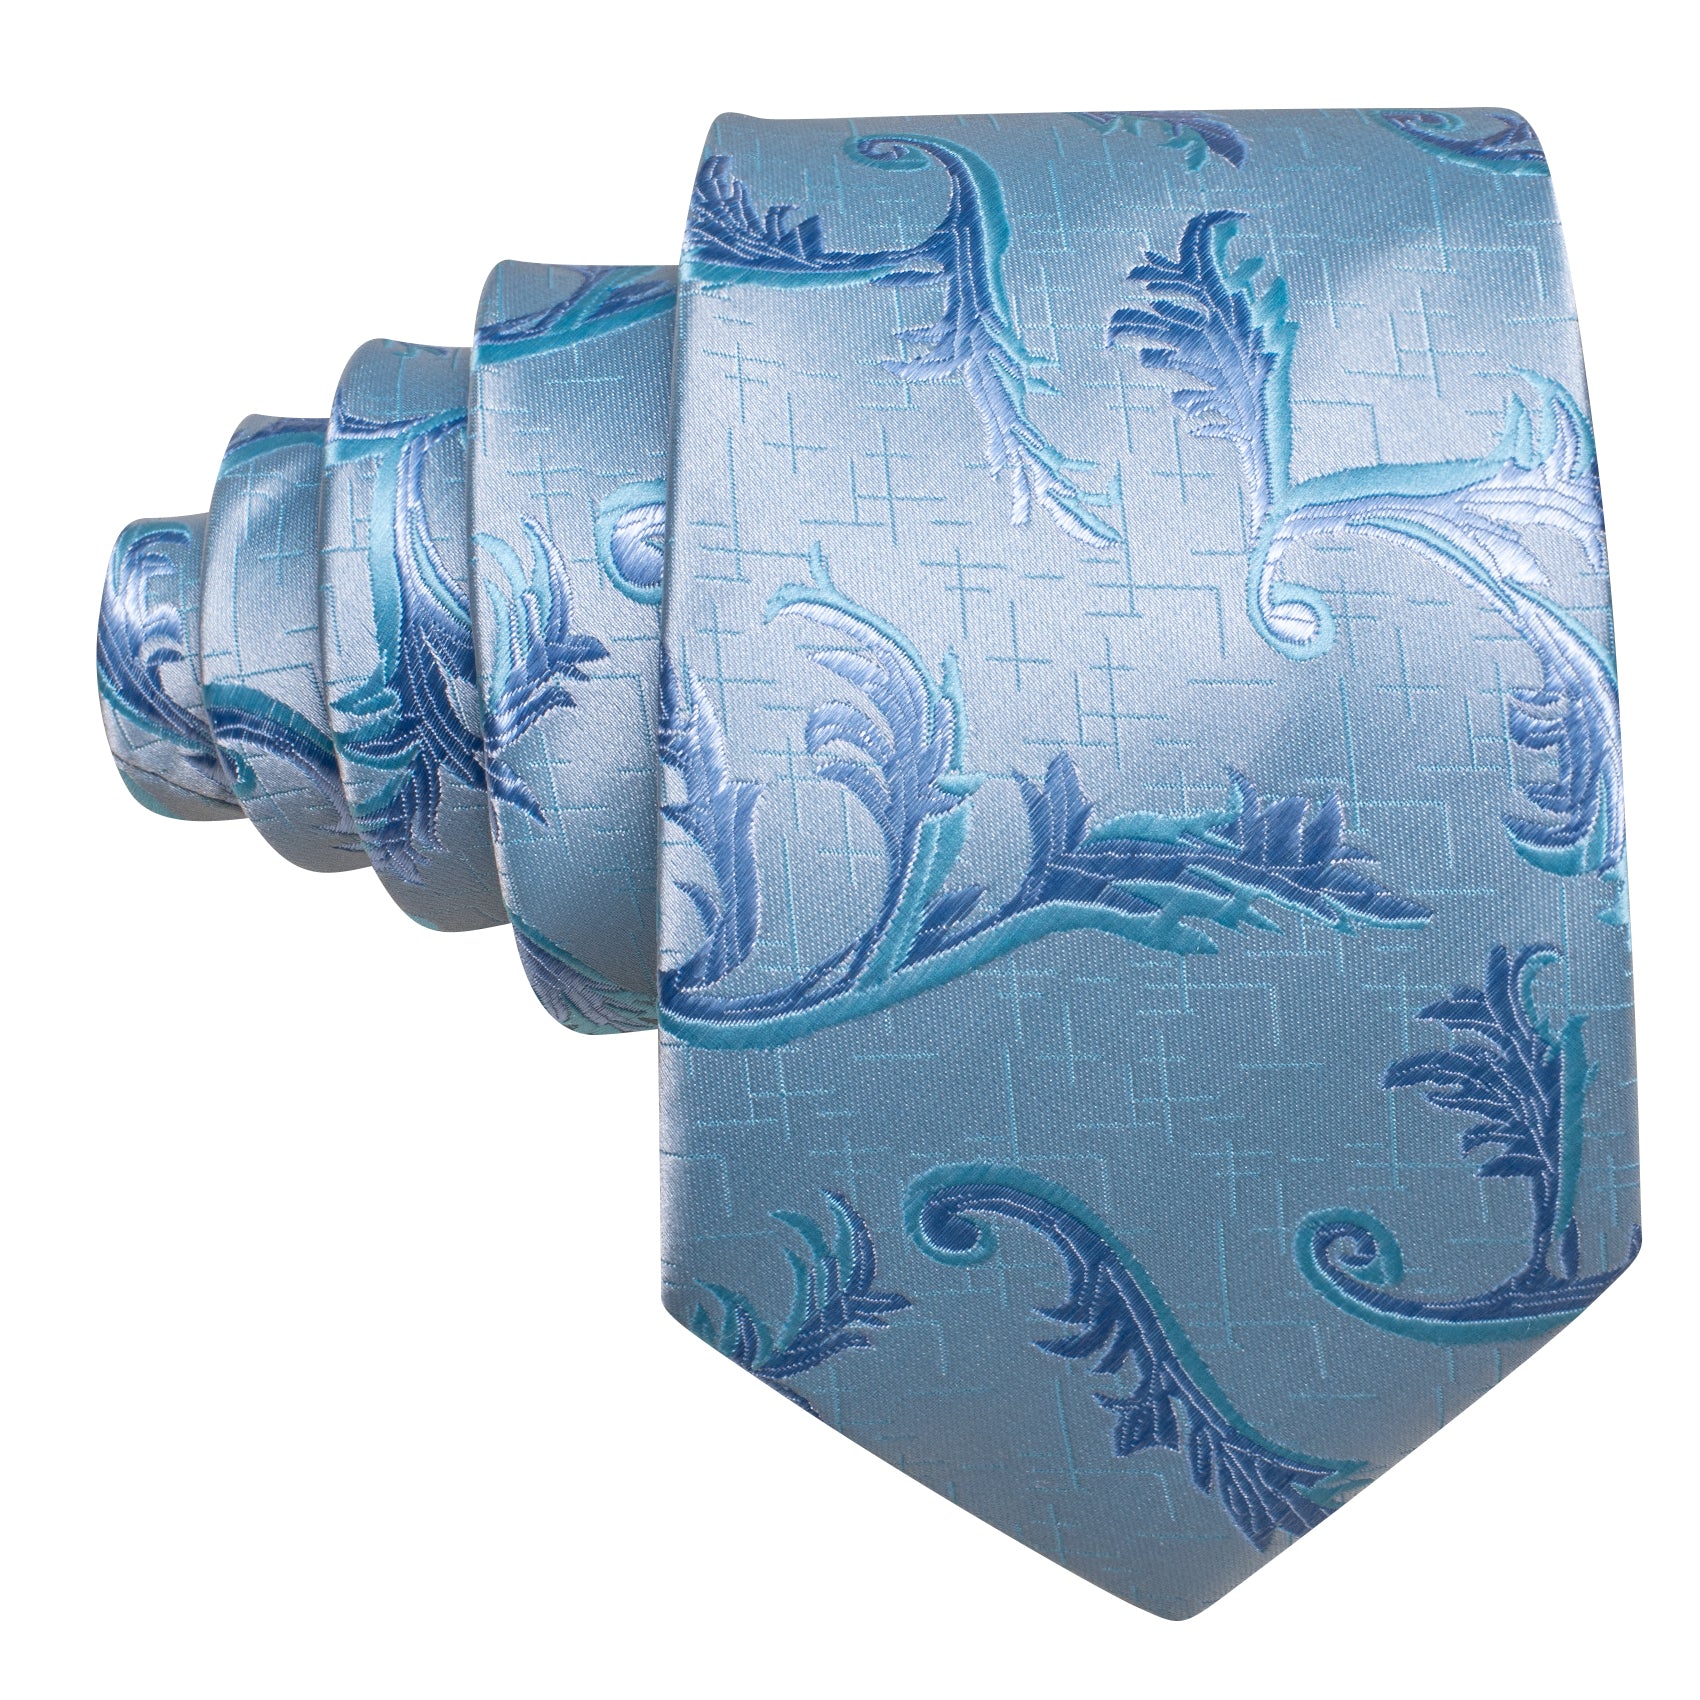 Sea Foam Floral Silk Tie Hanky Cufflinks Set